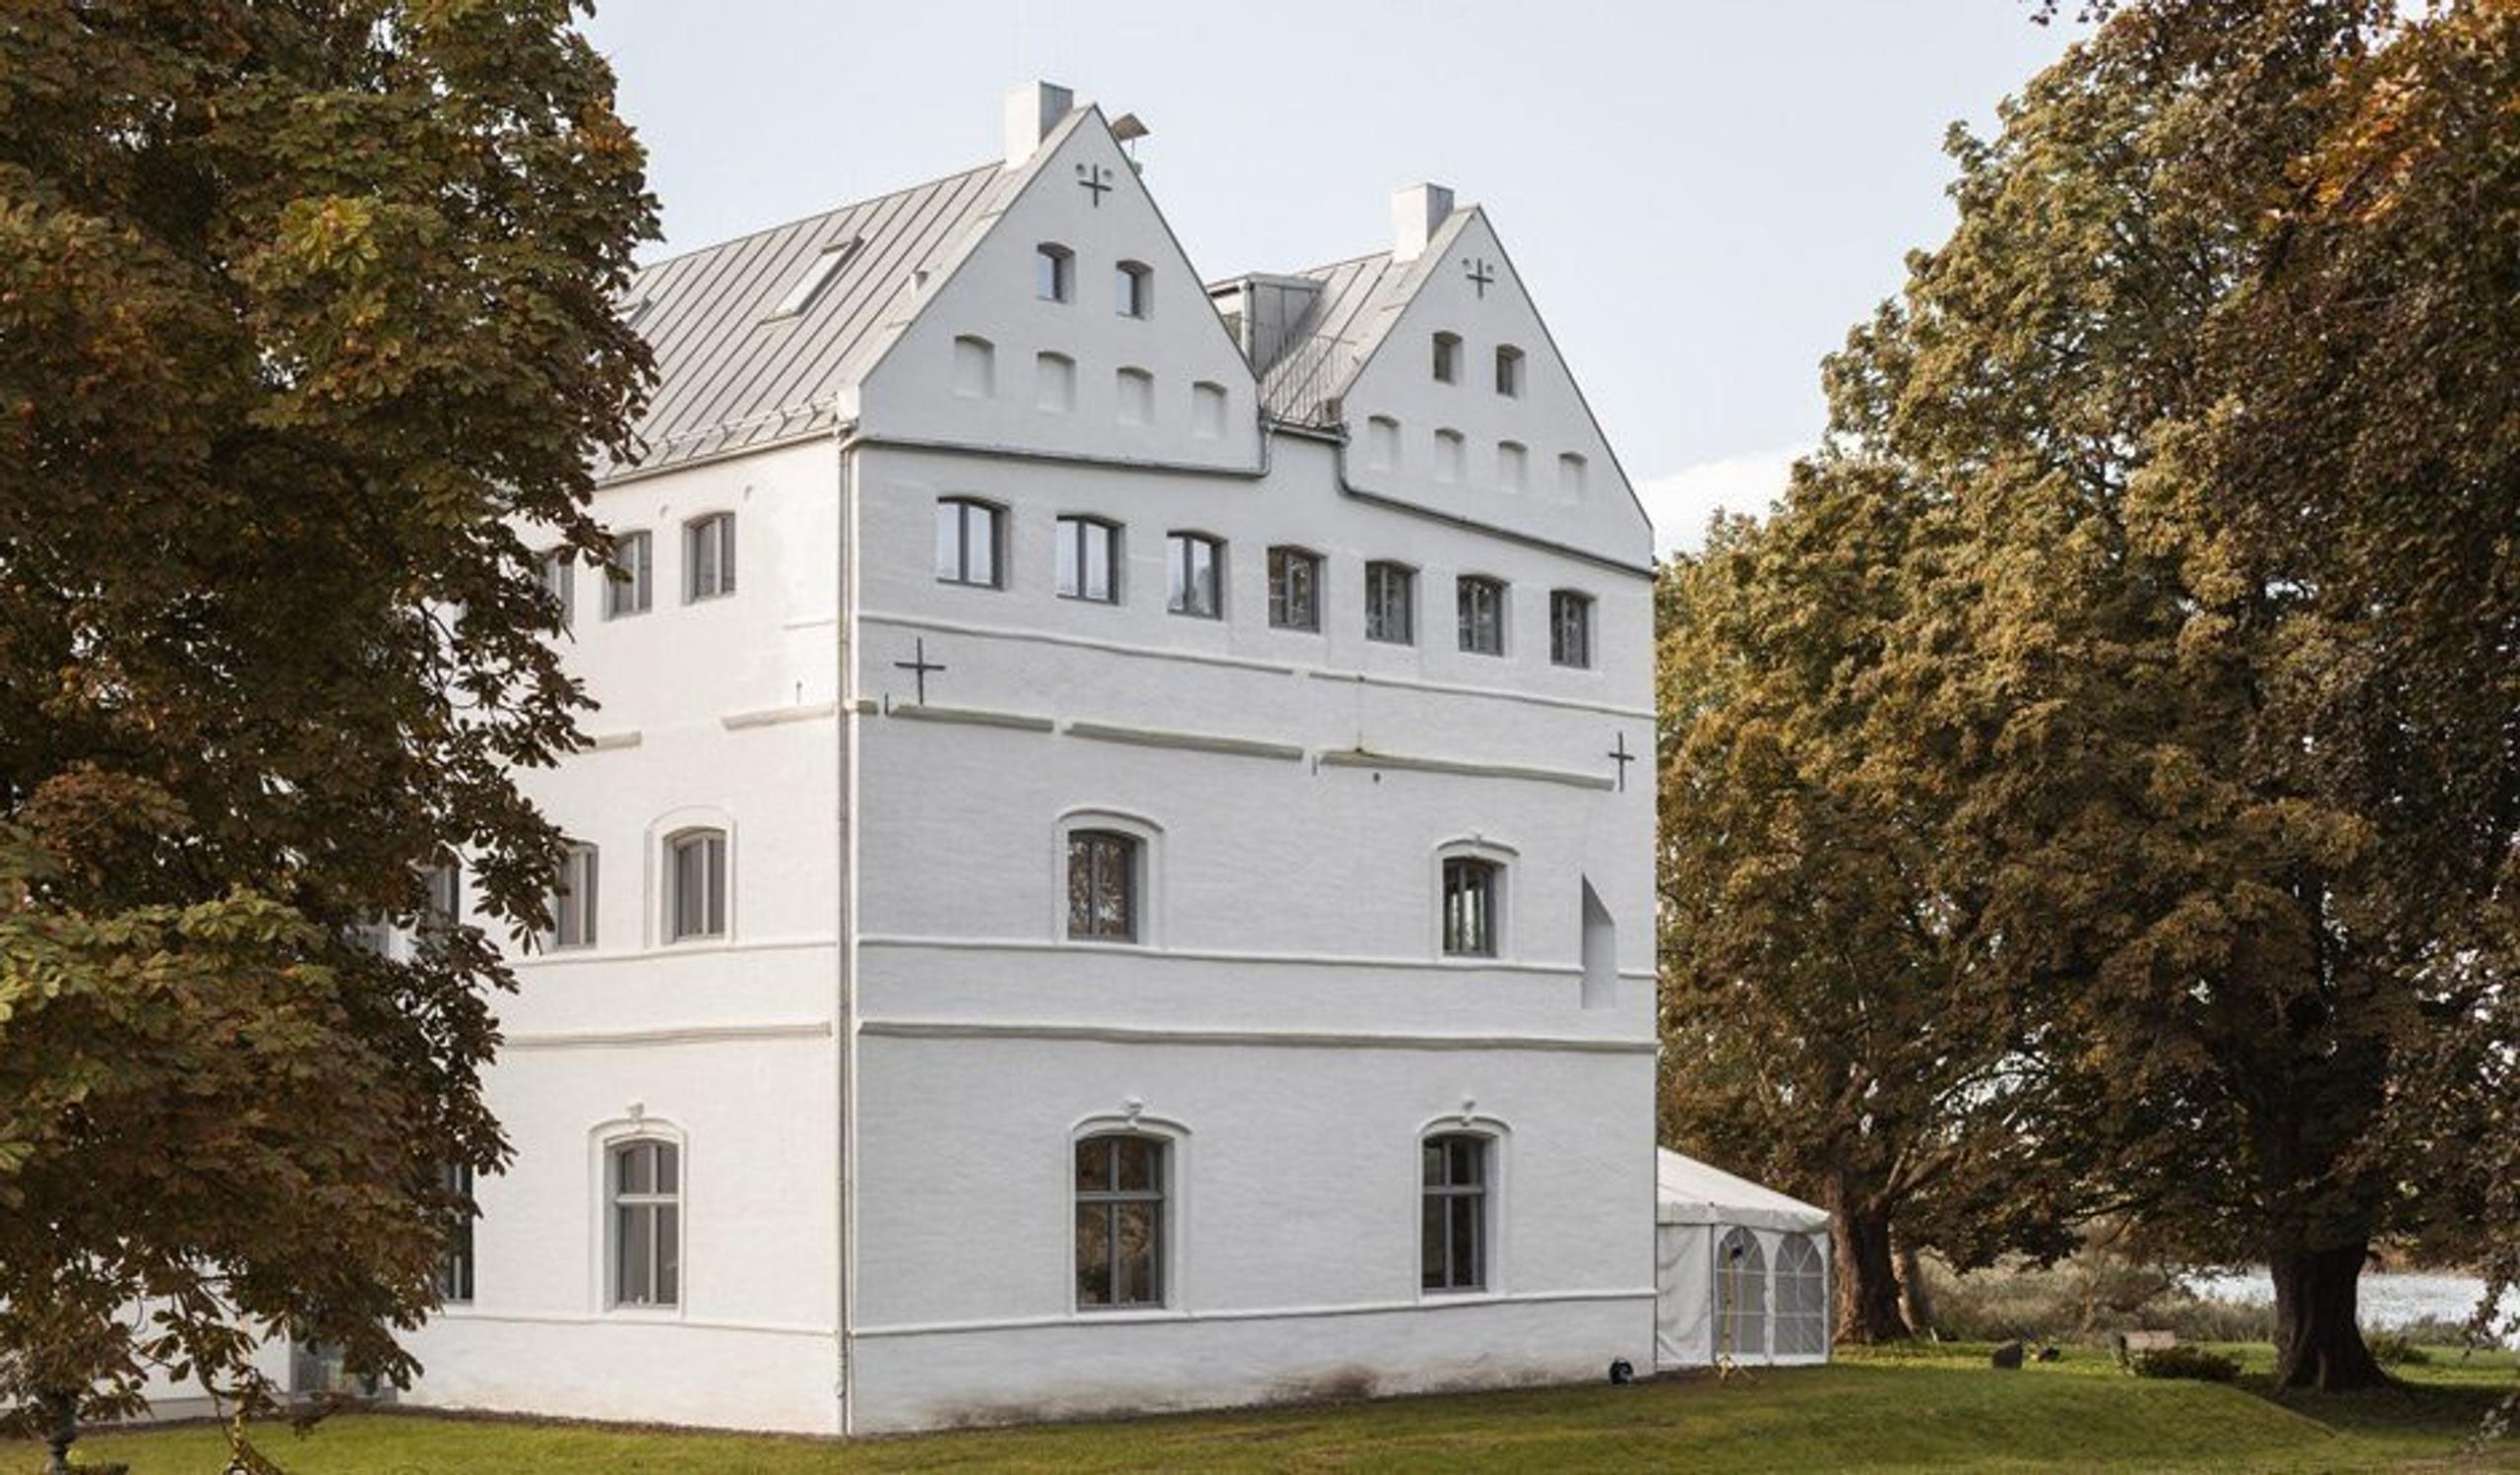 View of white facade of Gut Üselitz manor